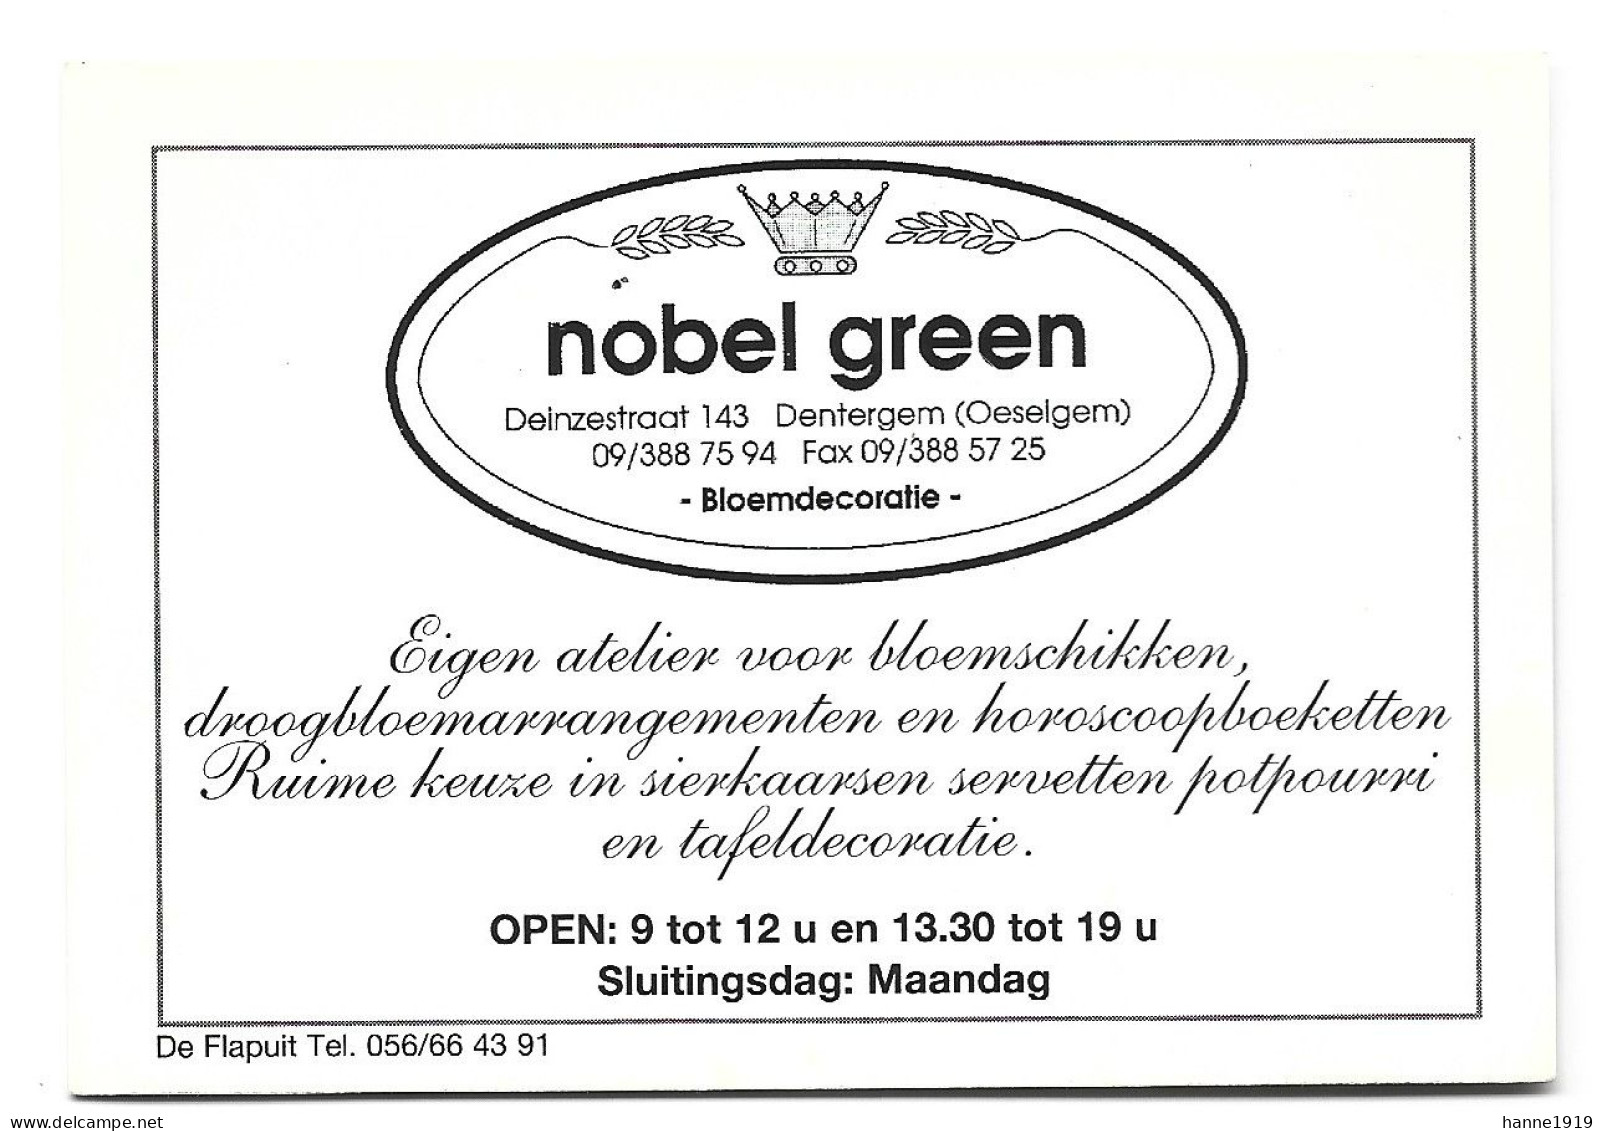 Dentergem Oeselgem Deinzestraat Atelier Nobel Green Etiquette Visitekaartje Htje - Cartes De Visite